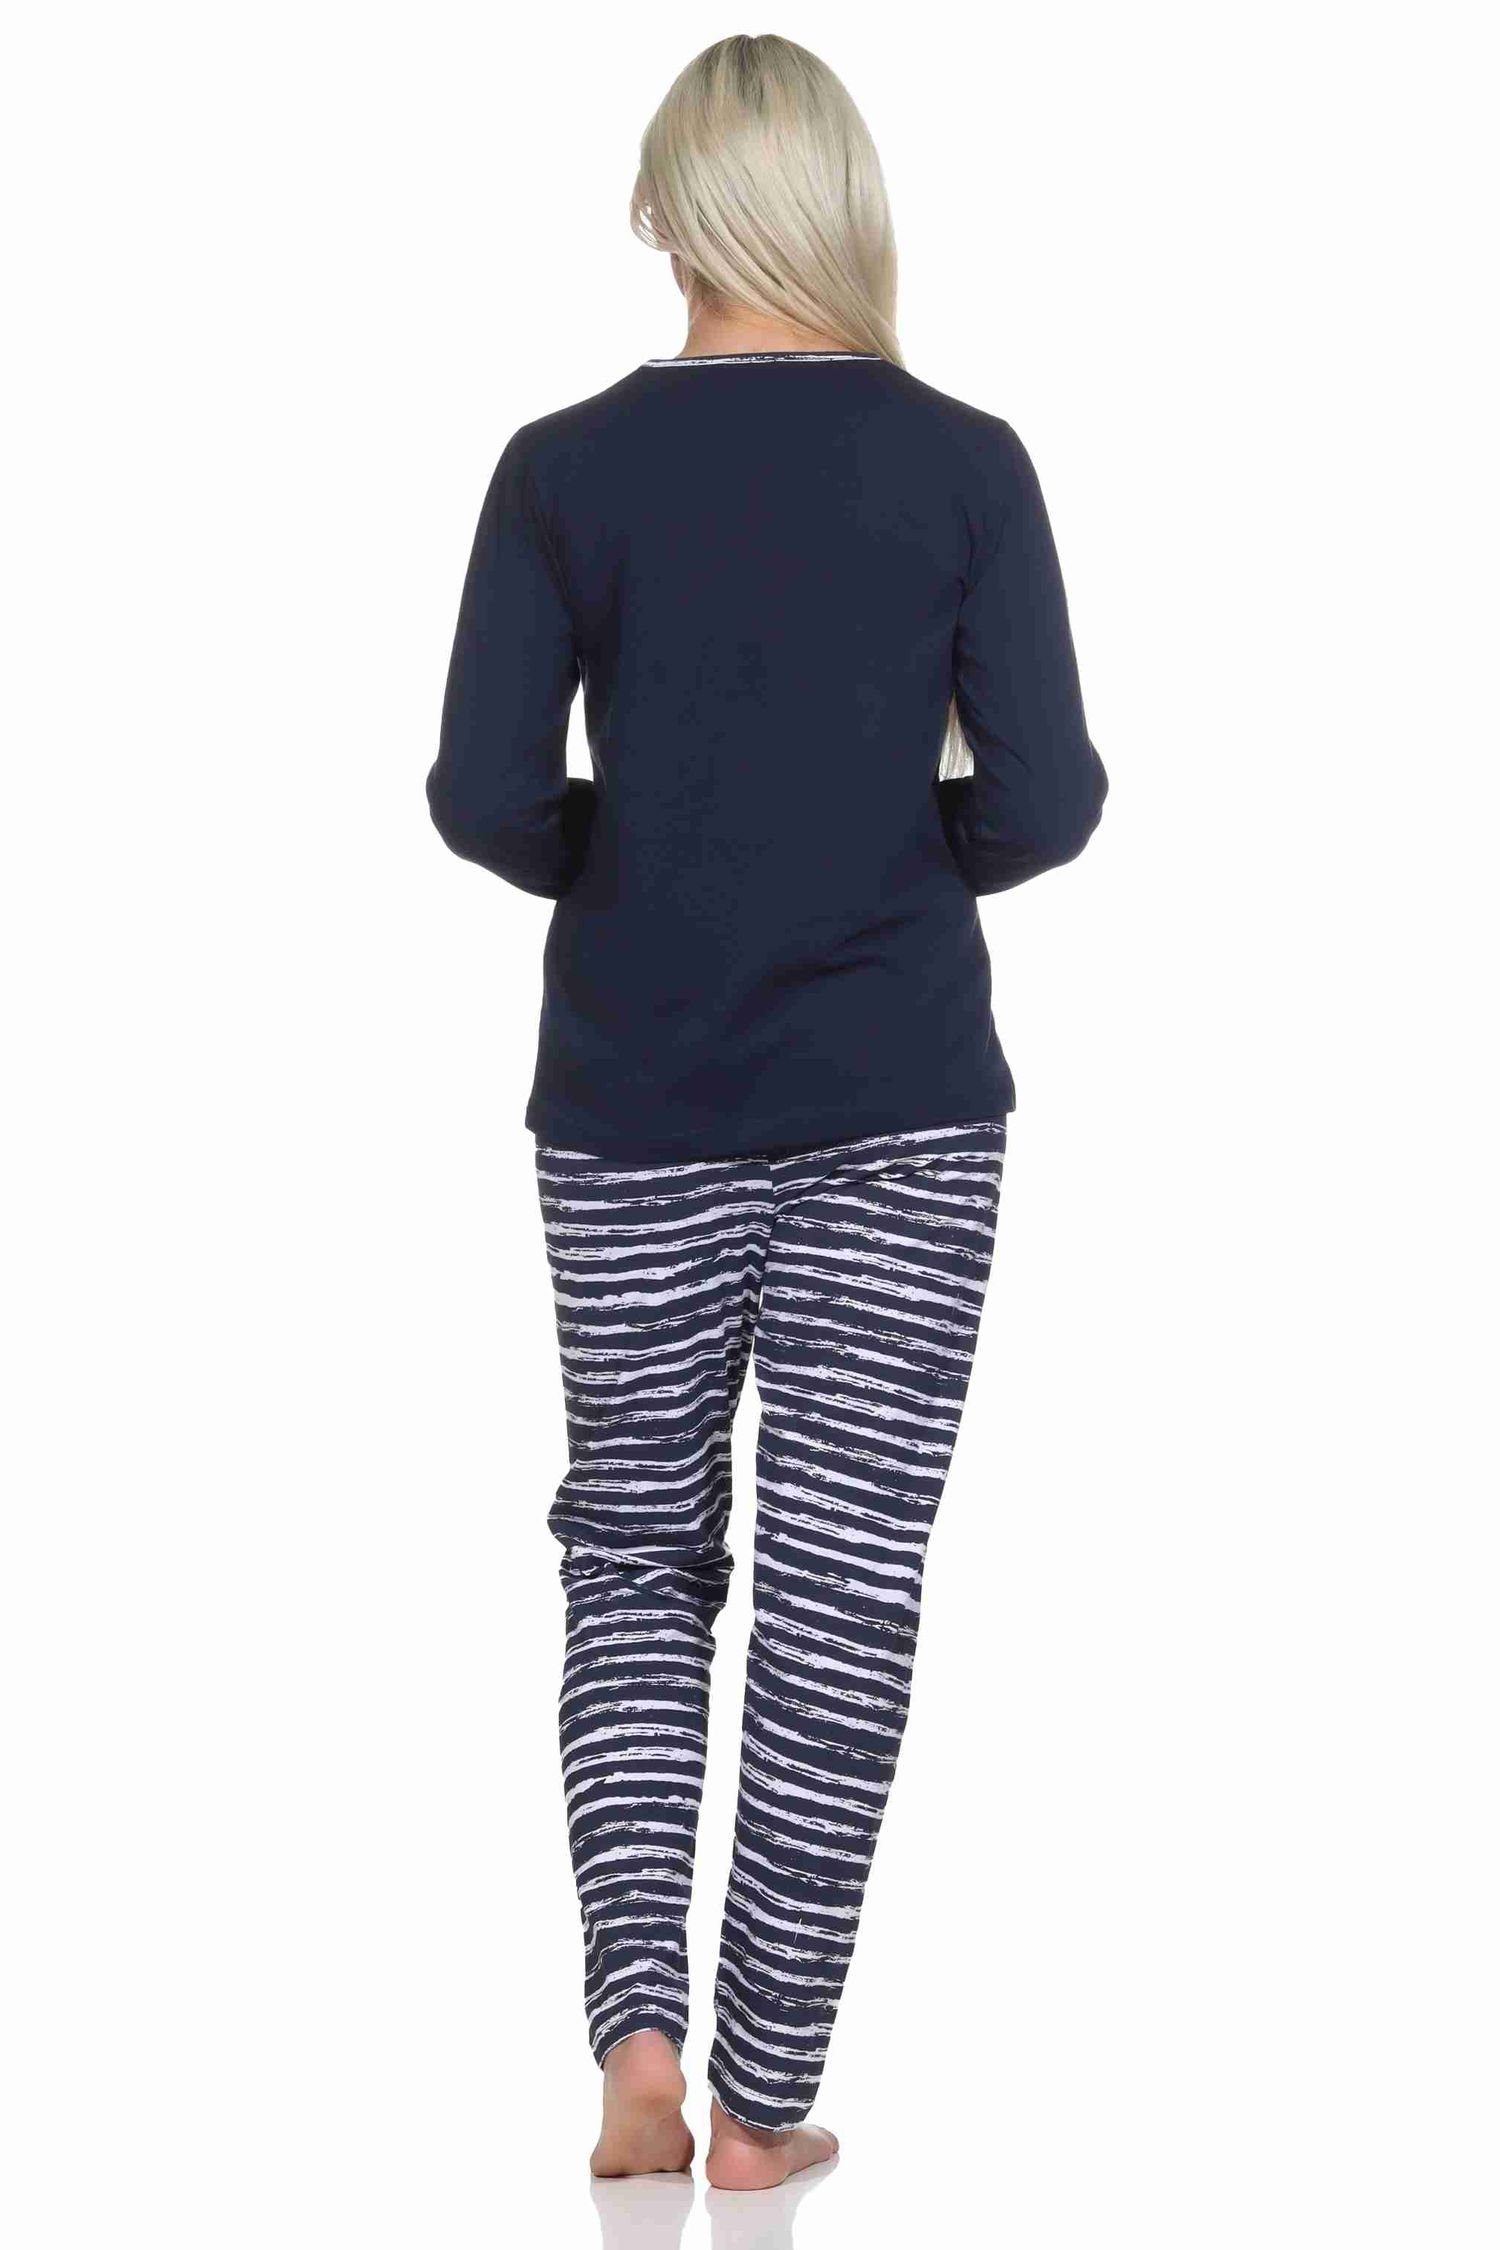 mit gestreifter marine Damen Pyjama Motiv Normann langarm Schlafanzug Maritim Leuchtturm